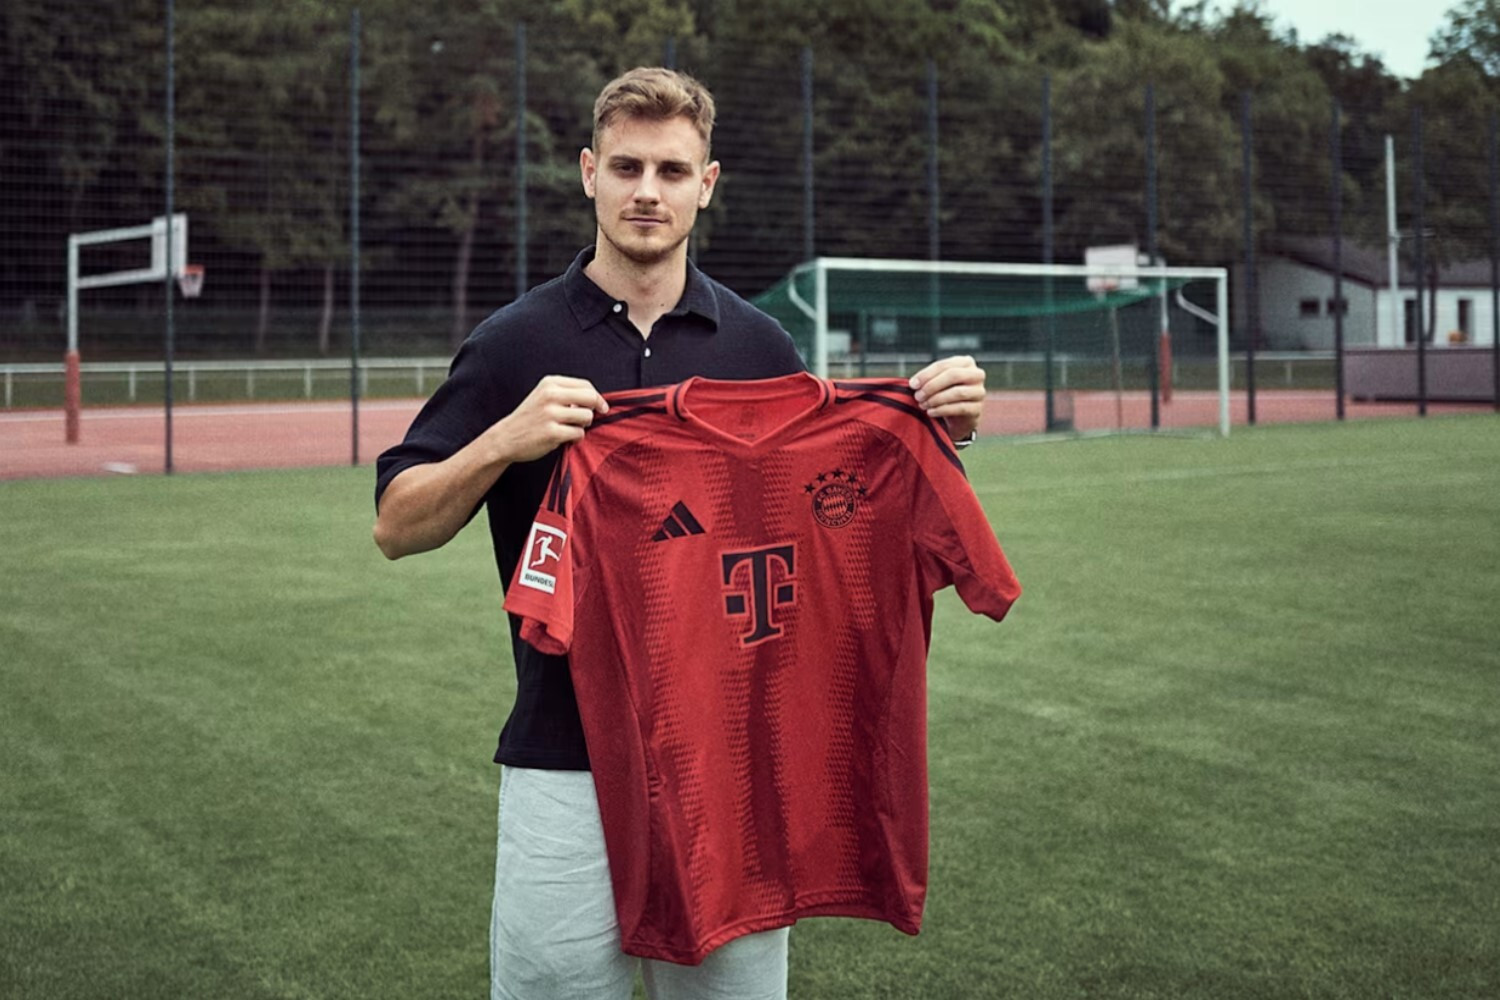 OFICJALNIE: Mistrz Niemiec przedłużył kontrakt z Bayernem Monachium